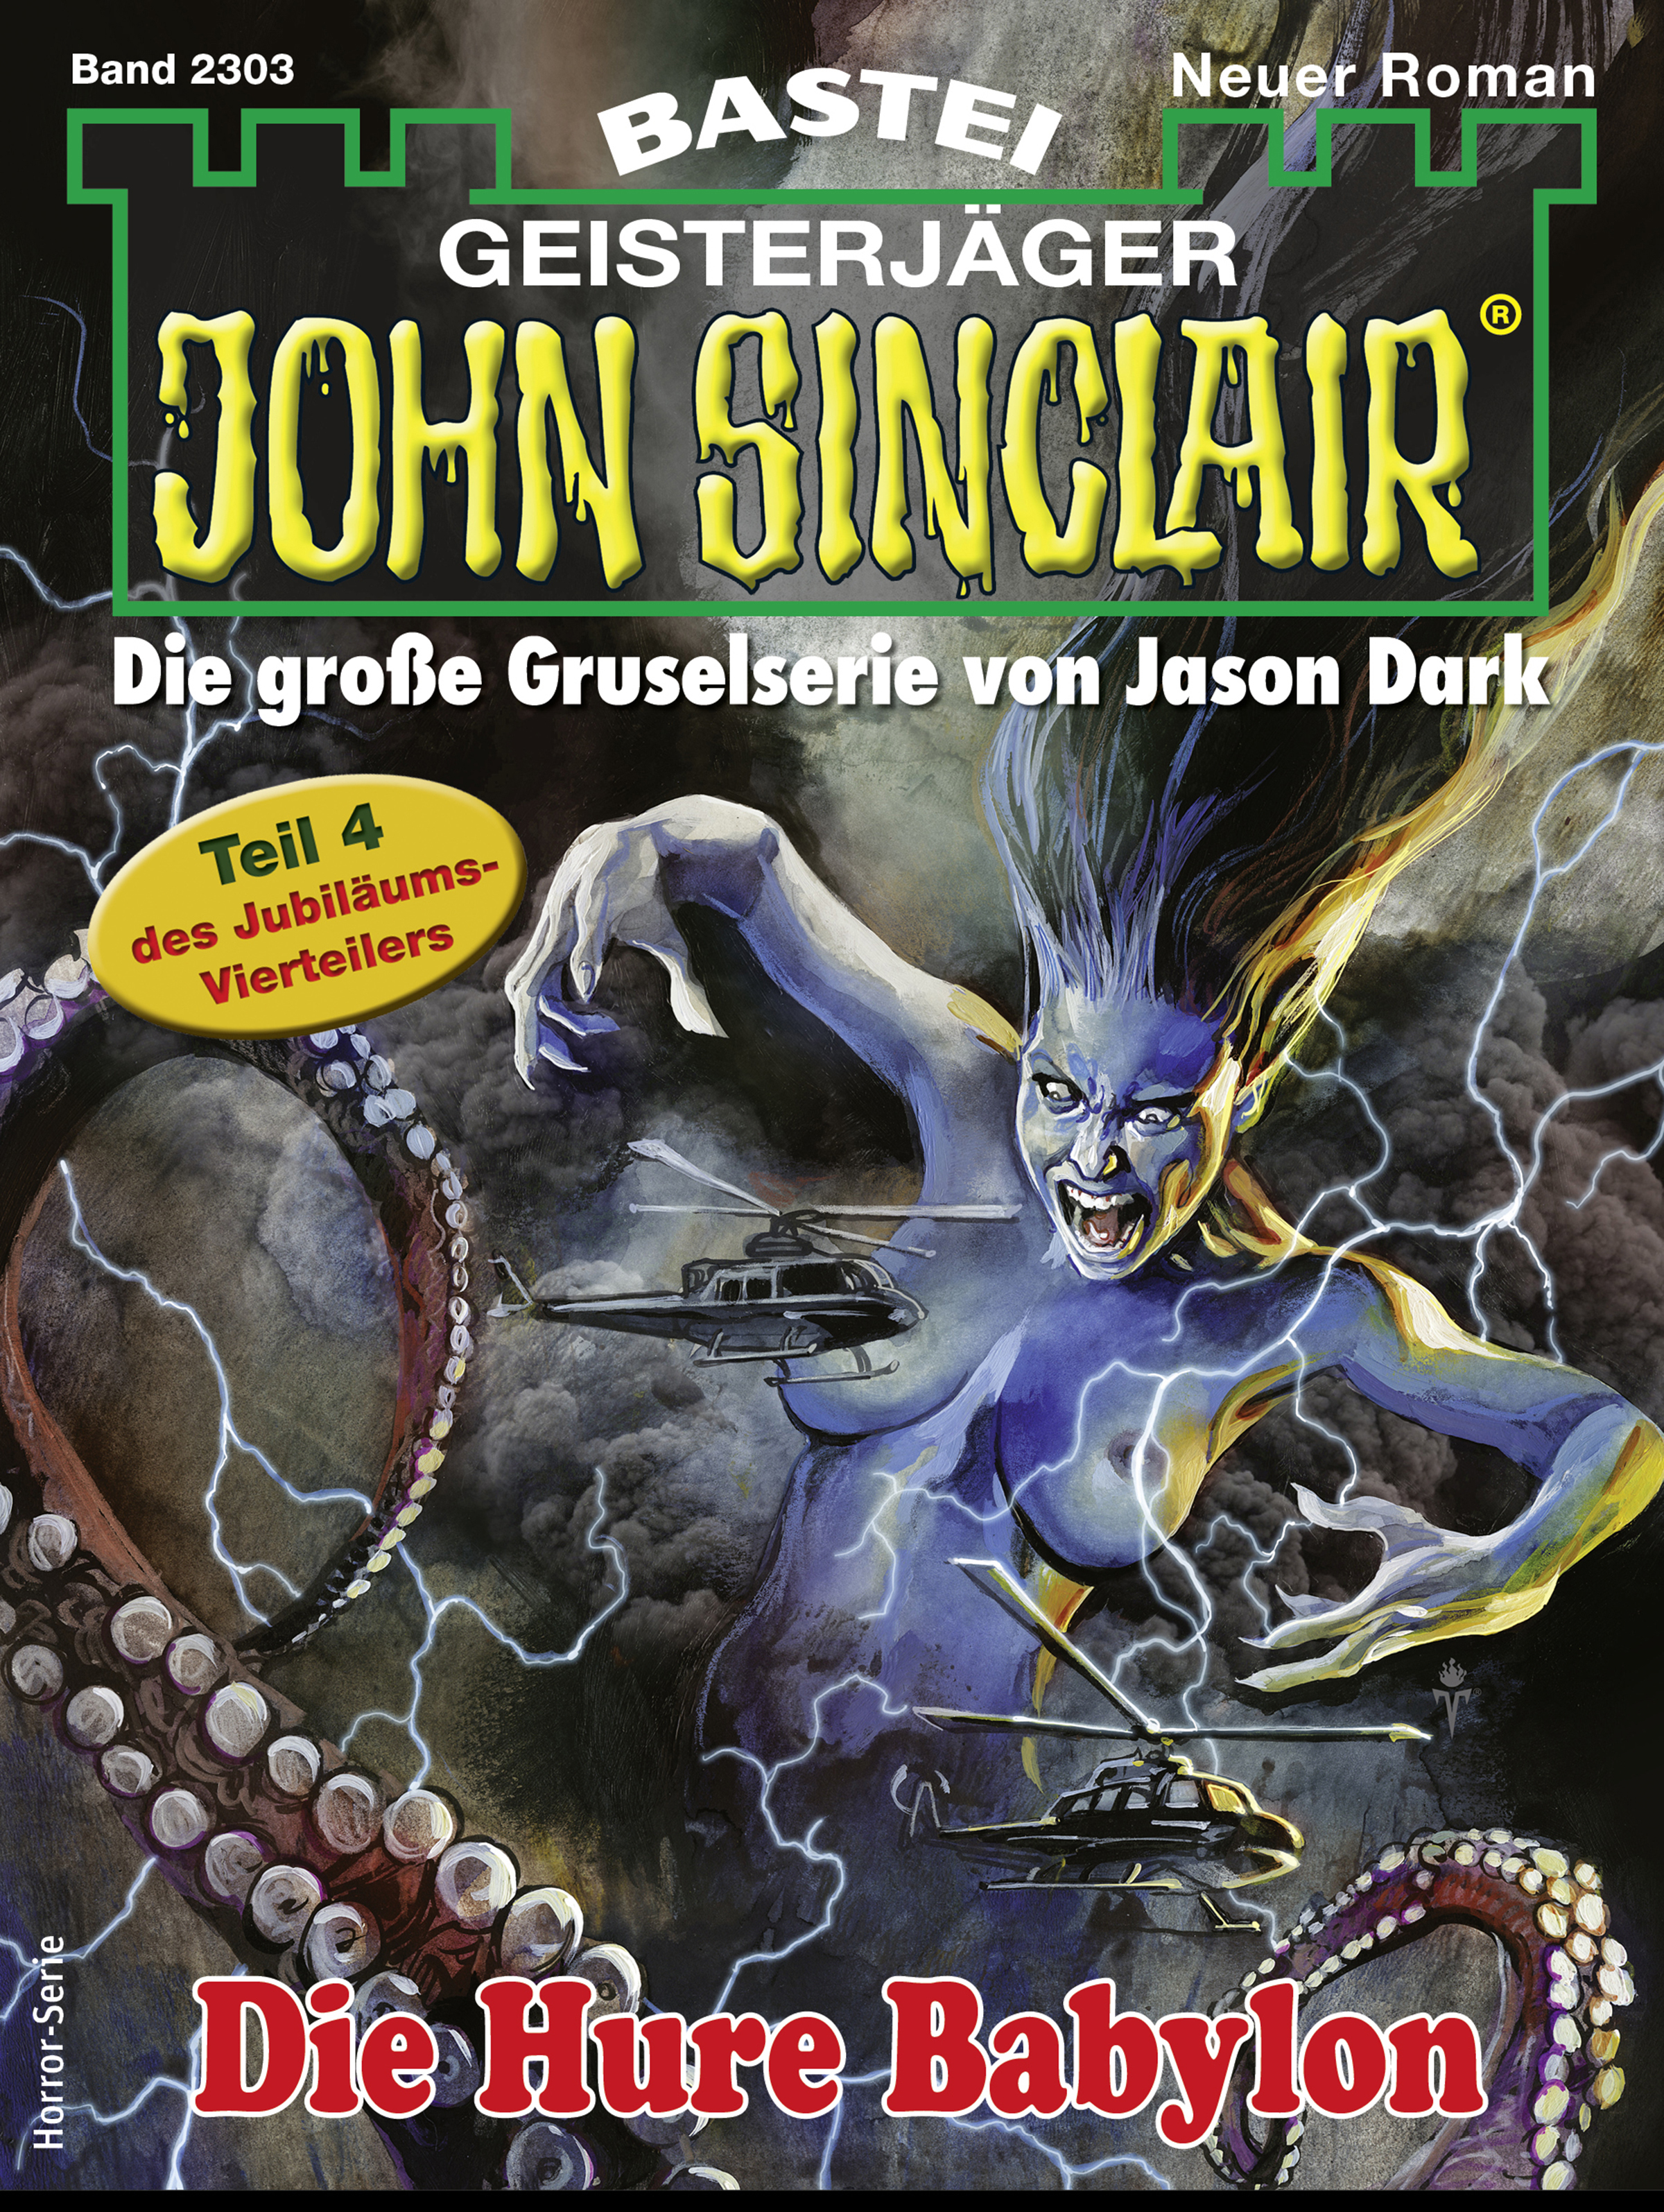 John Sinclair Collection Jubiläums-Vierteiler 2300 - 2303